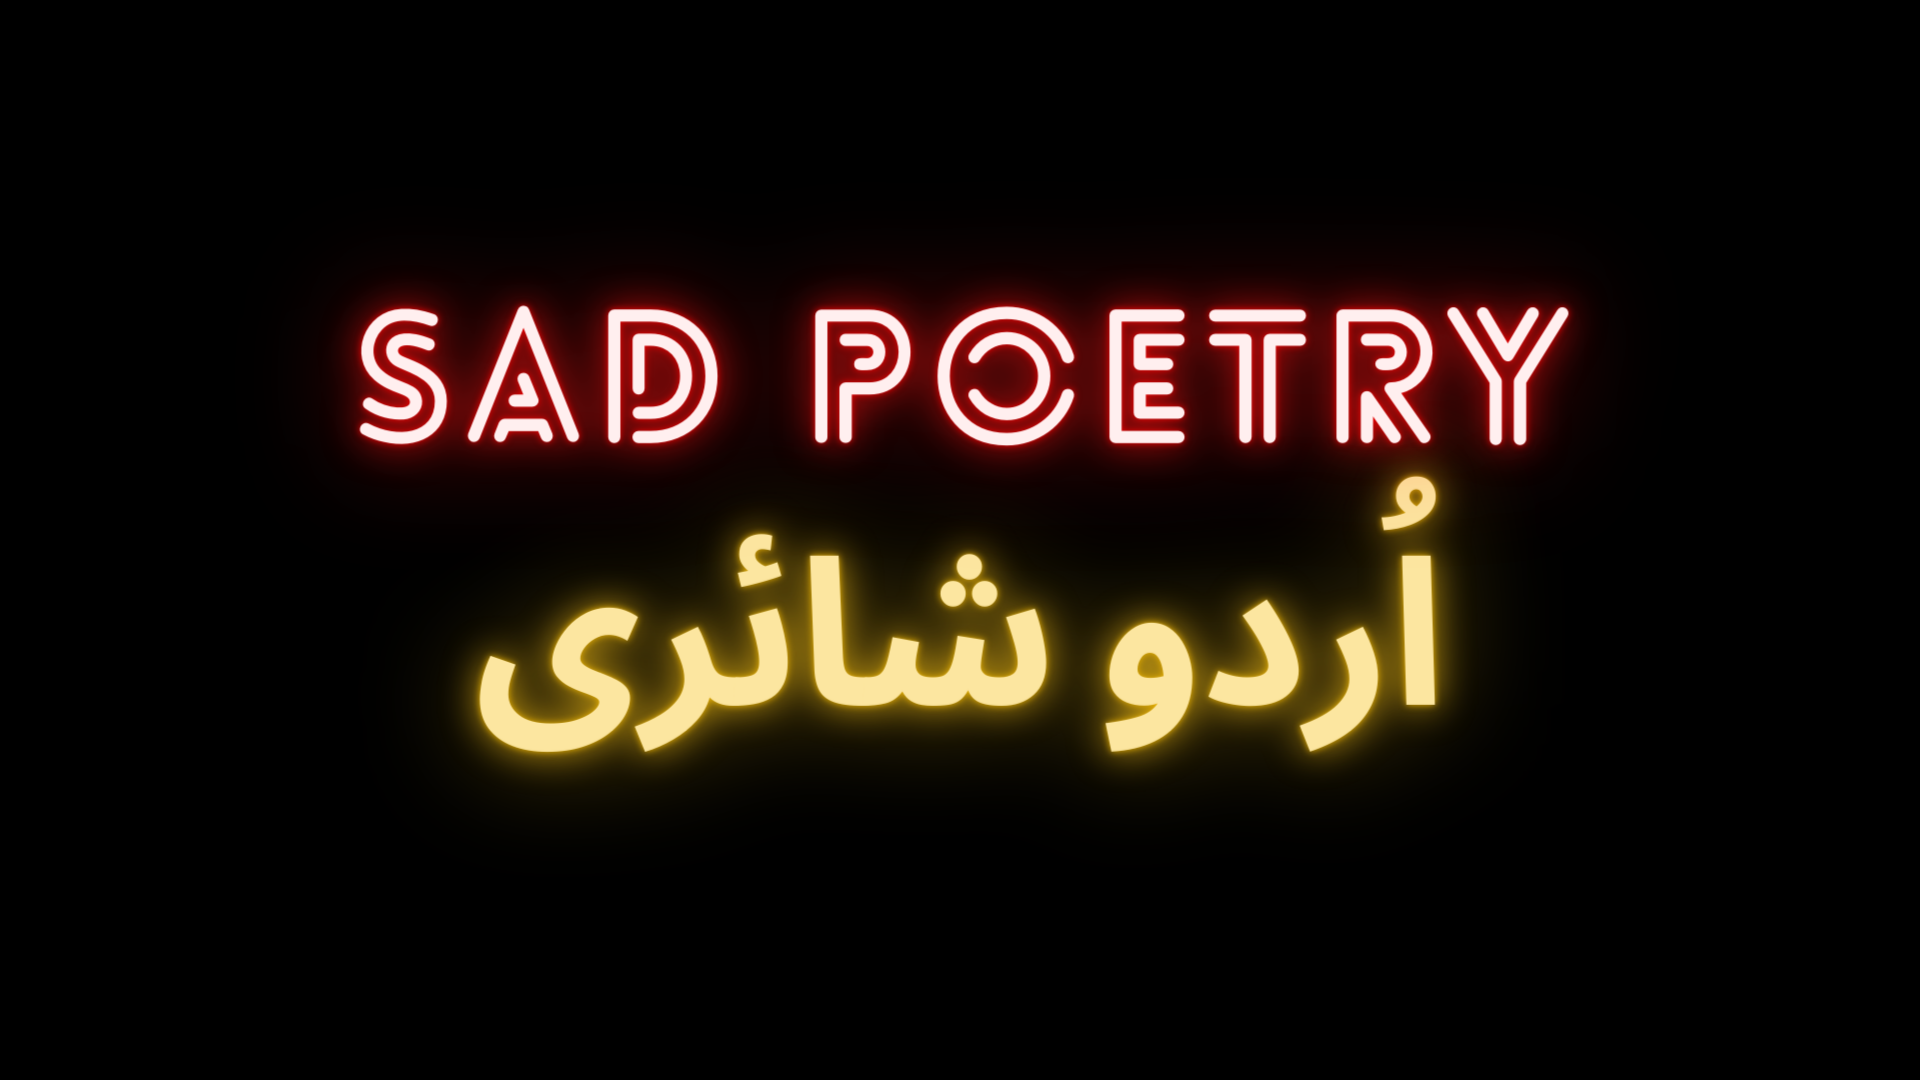 Sad-urdu-poetry-in-written-form-2023